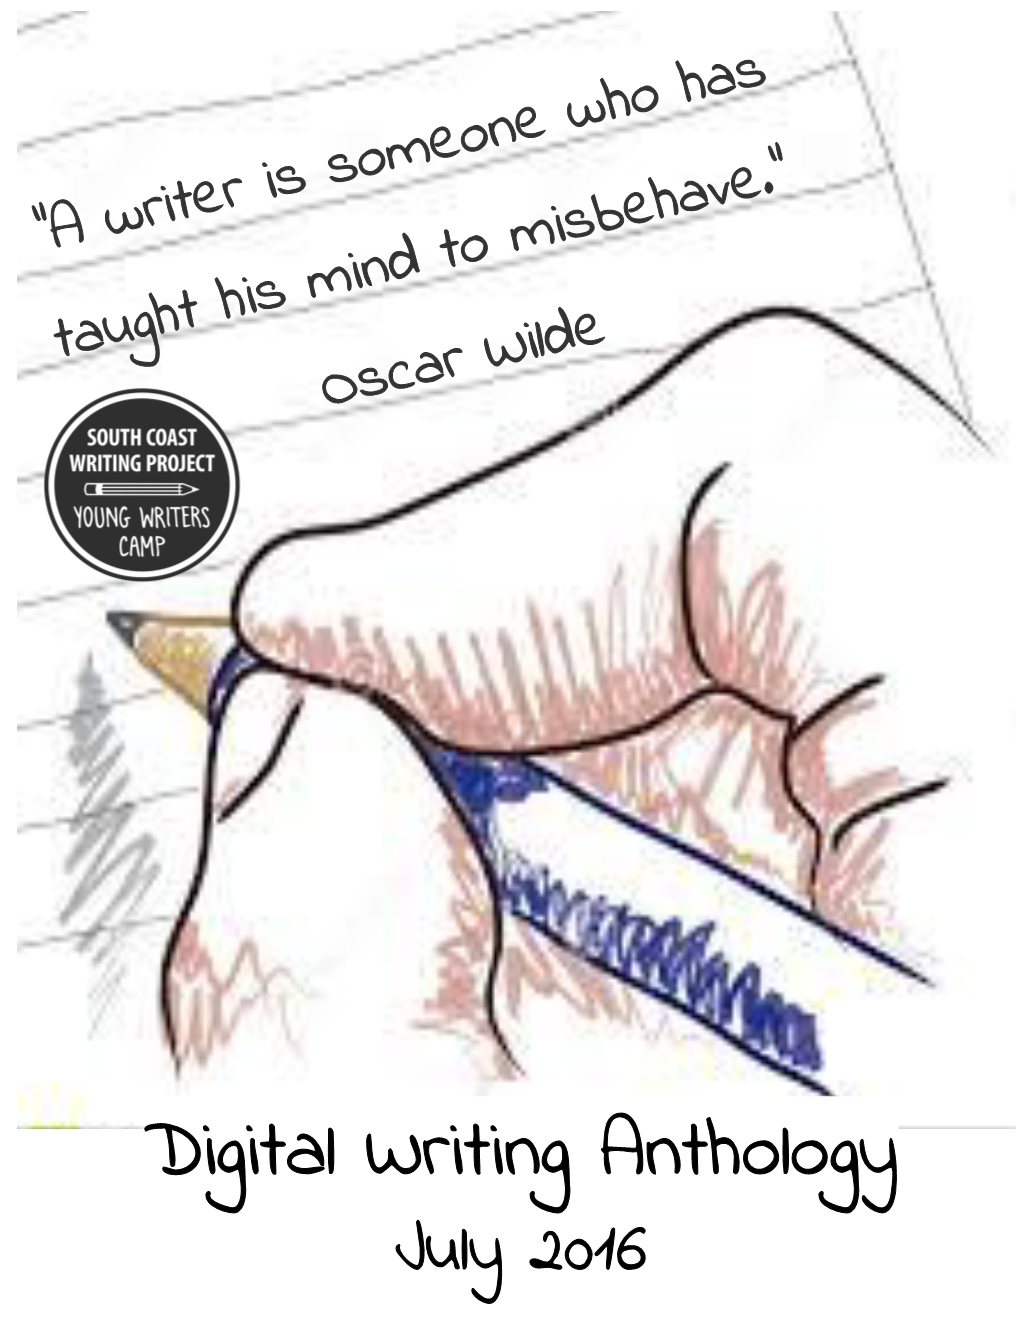 Digital Writing Anthology July 2016